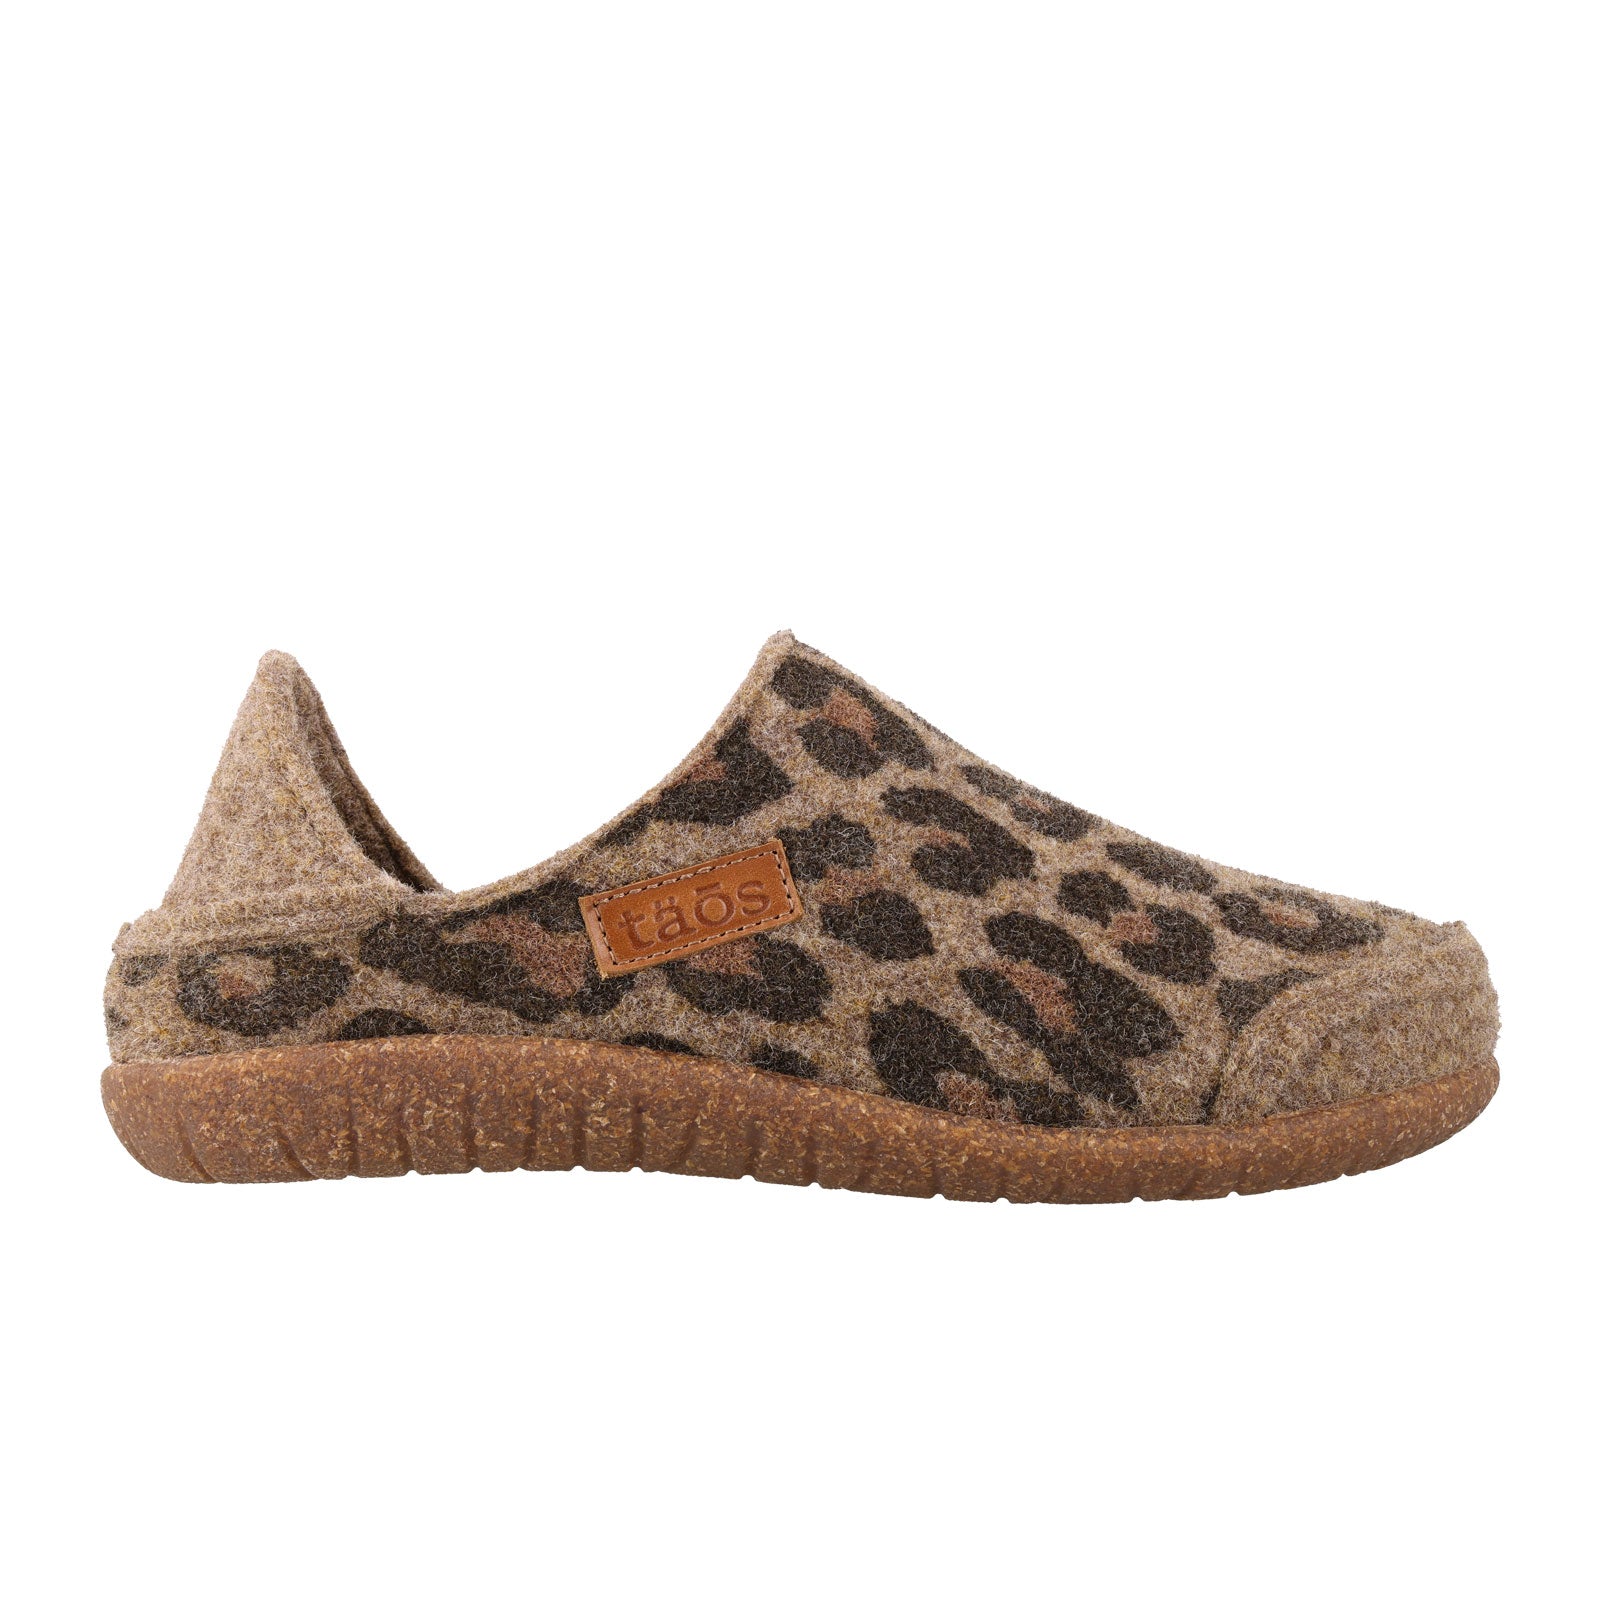 Taos Convertawool Slip On (Women) - Tan Leopard Wool Dress-Casual - Slip Ons - The Heel Shoe Fitters